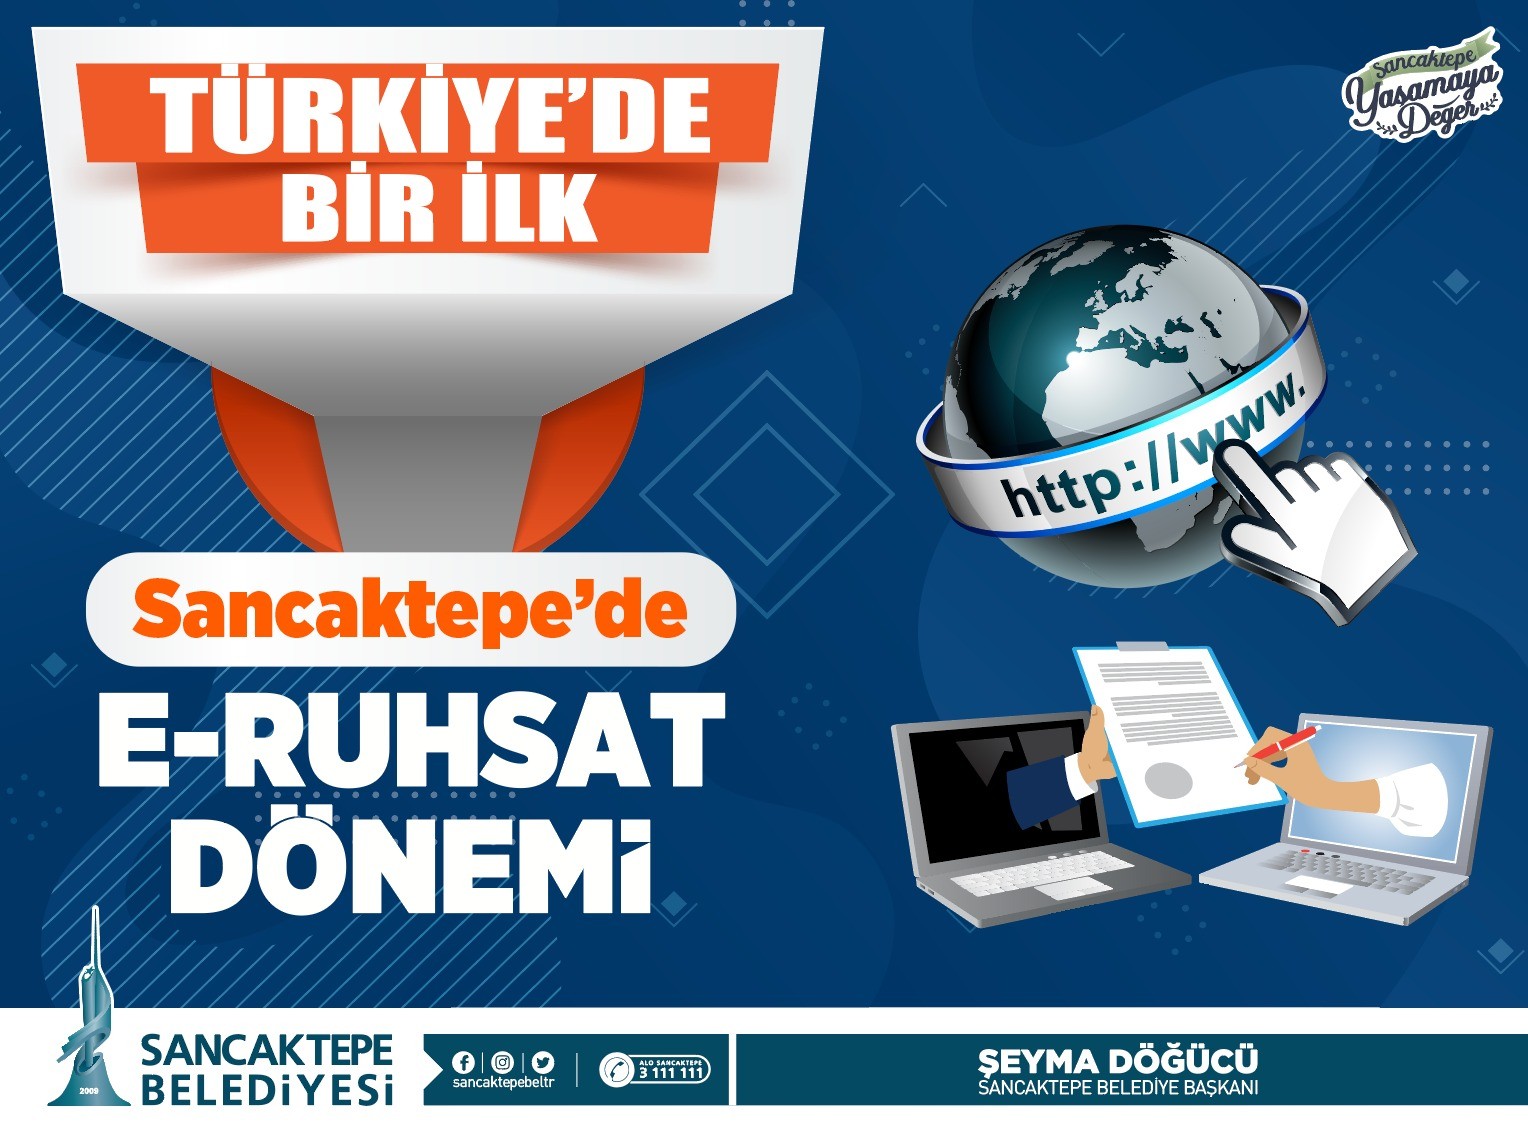 Sancaktepe Belediyesinden Türkiye’de bir ilk: e-ruhsat #istanbul